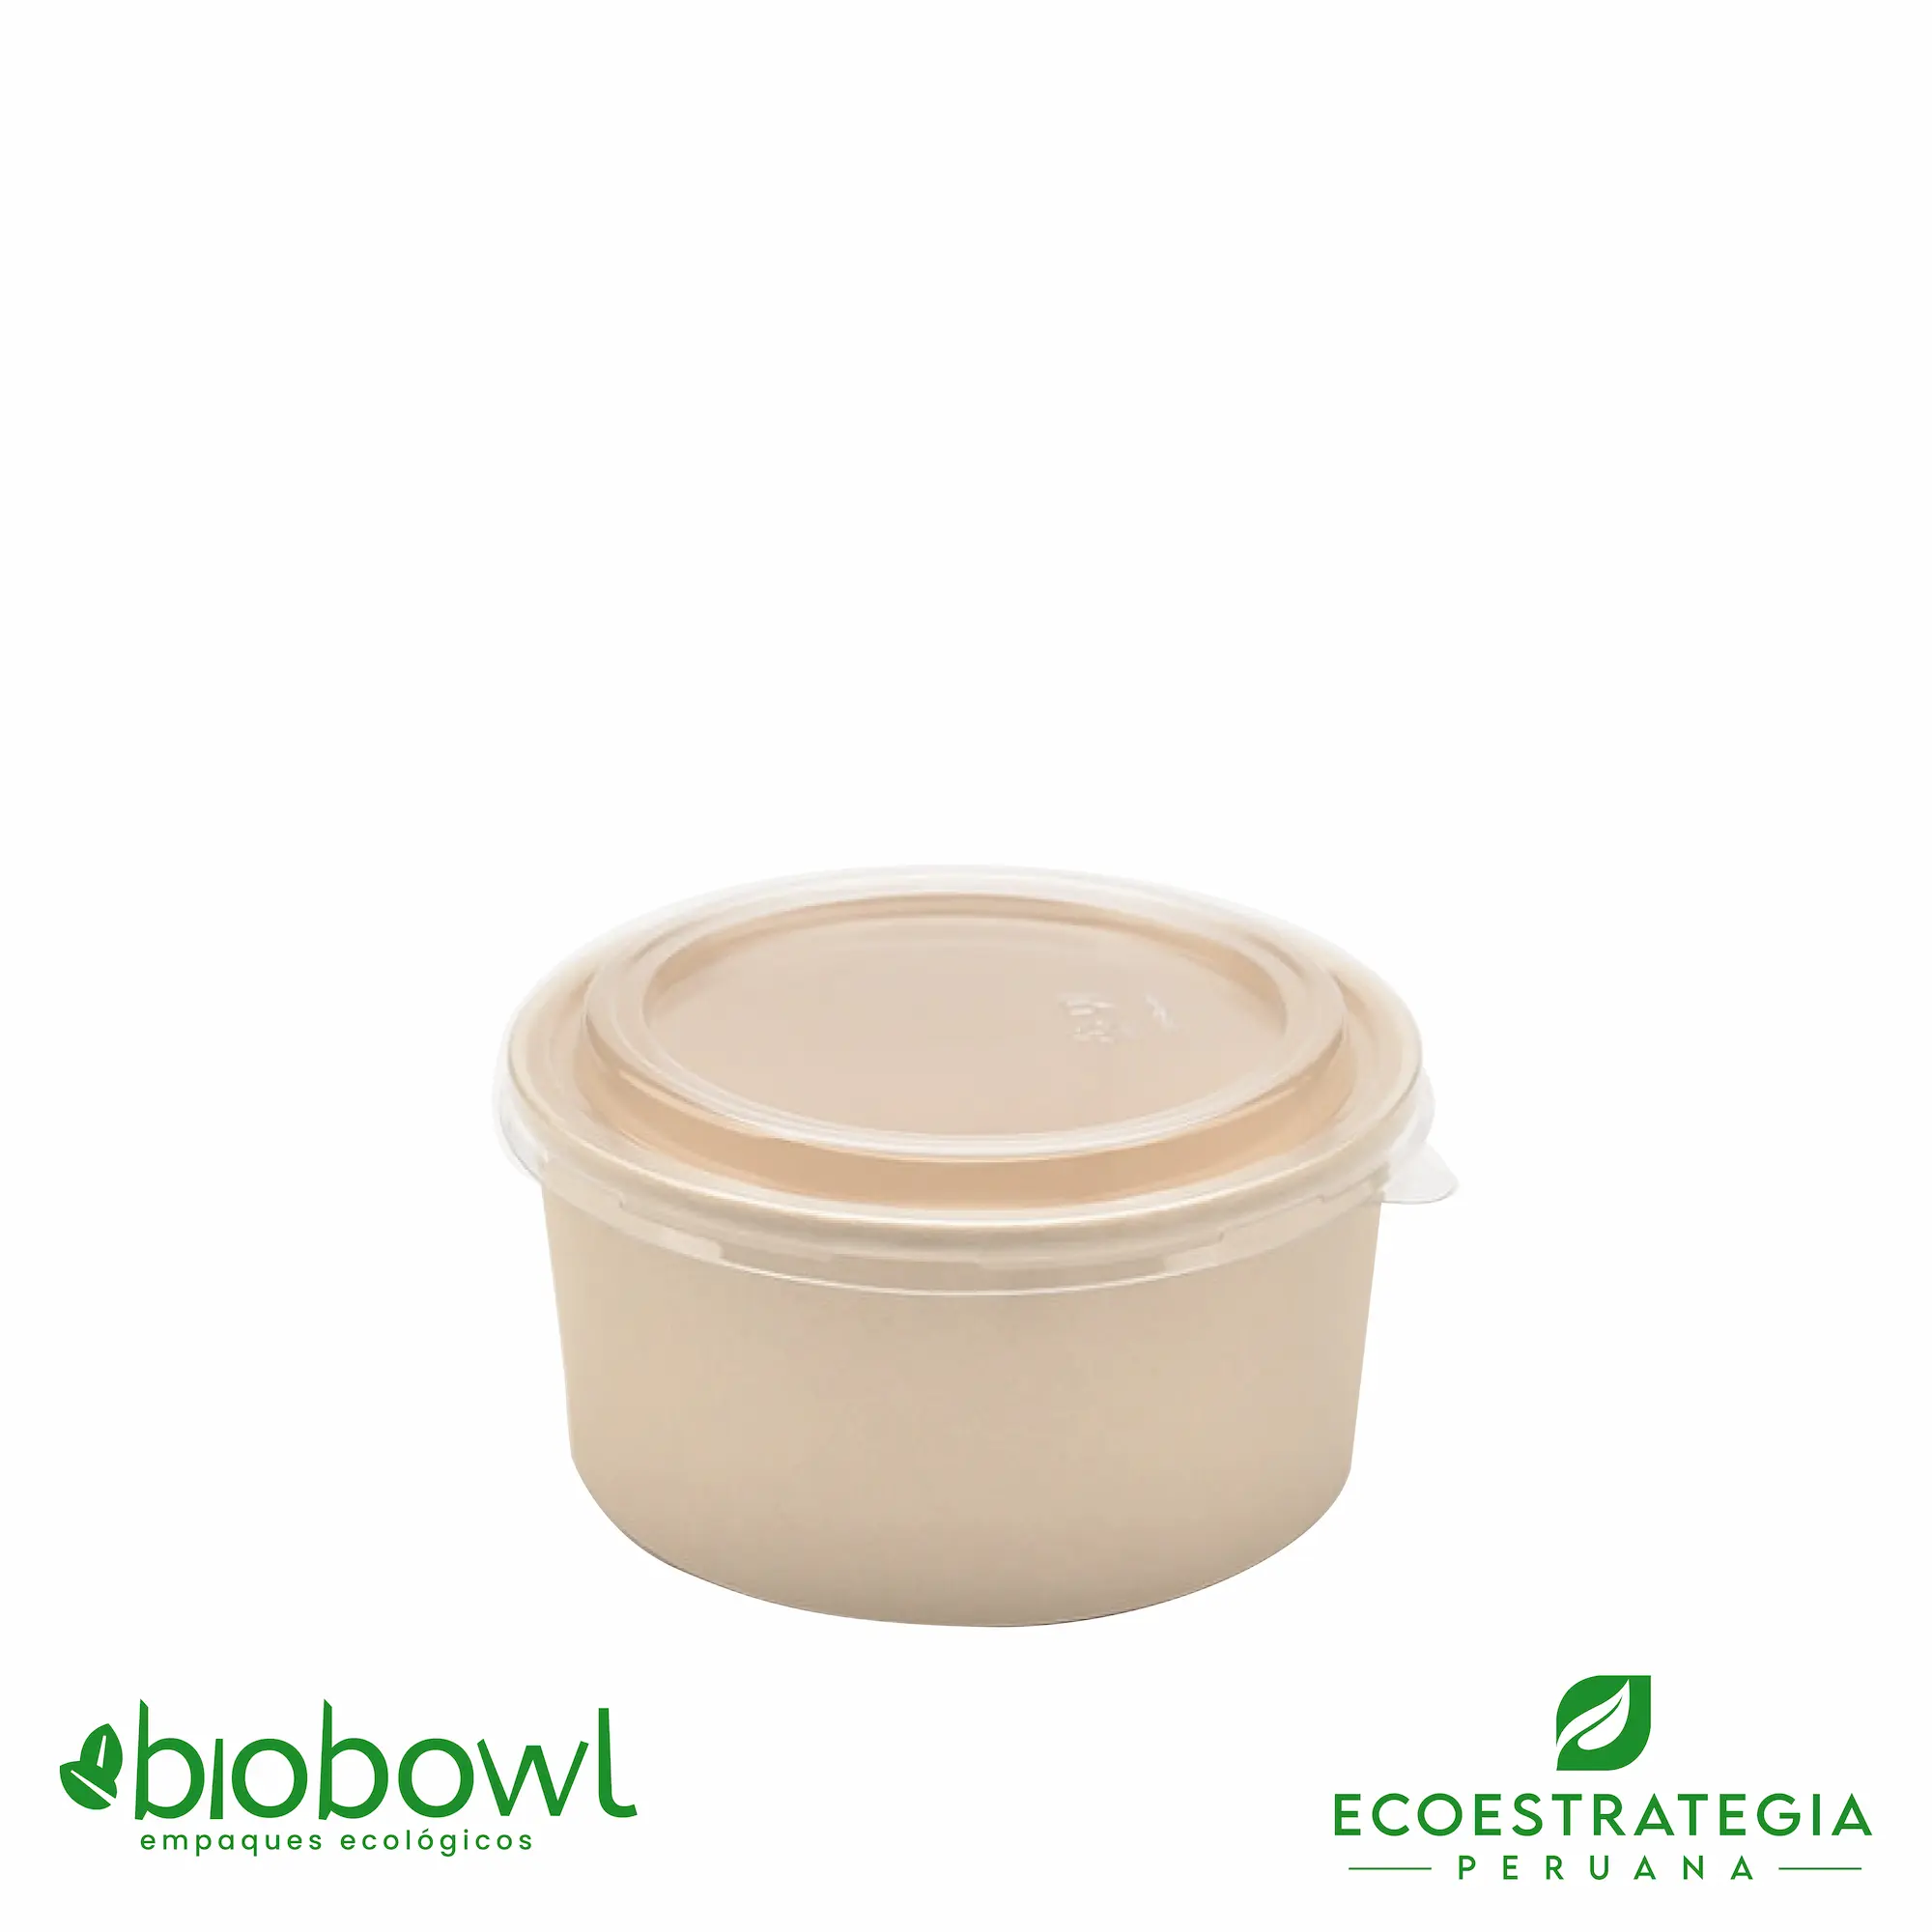 Este envase biodegradable es un bowl 330ml hecho de bambú. Envases descartables con gramaje ideal, cotiza tus vasos para helados, táper para sopa, bowls salad